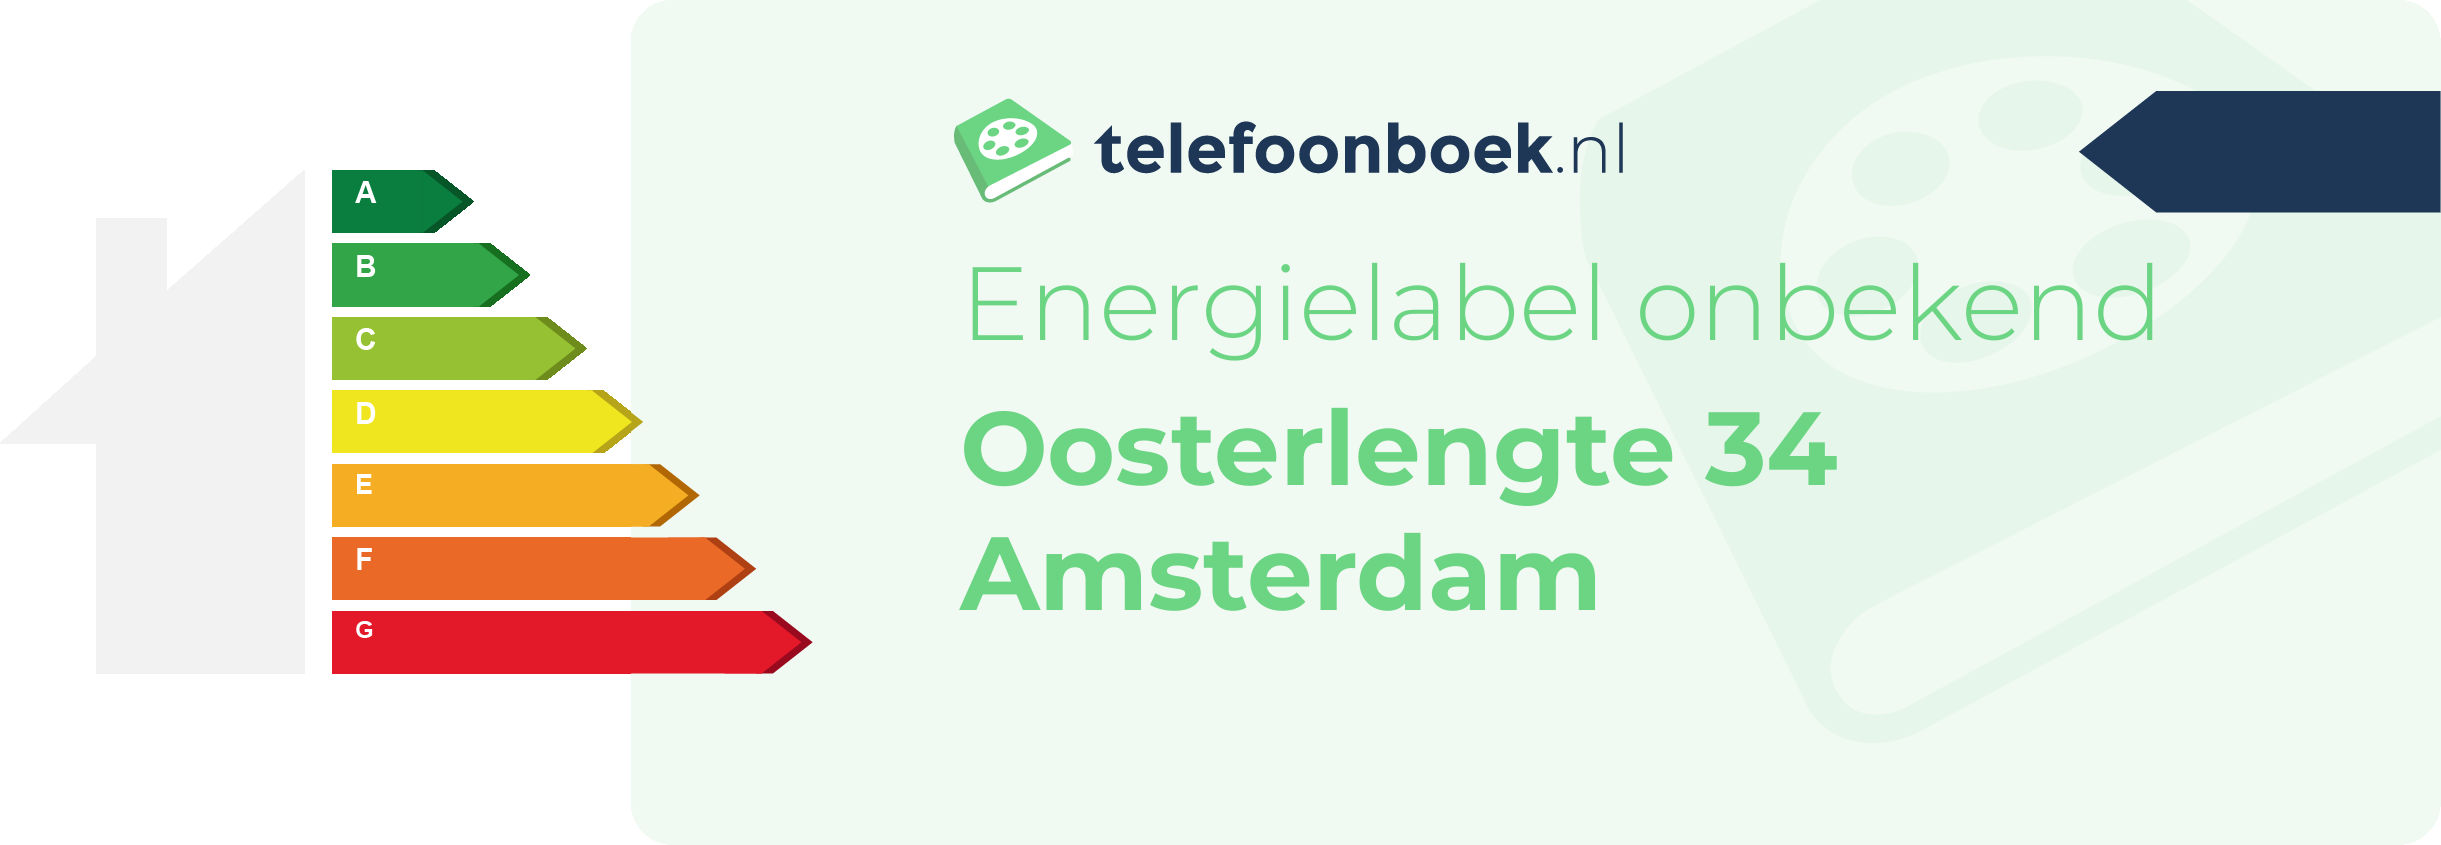 Energielabel Oosterlengte 34 Amsterdam